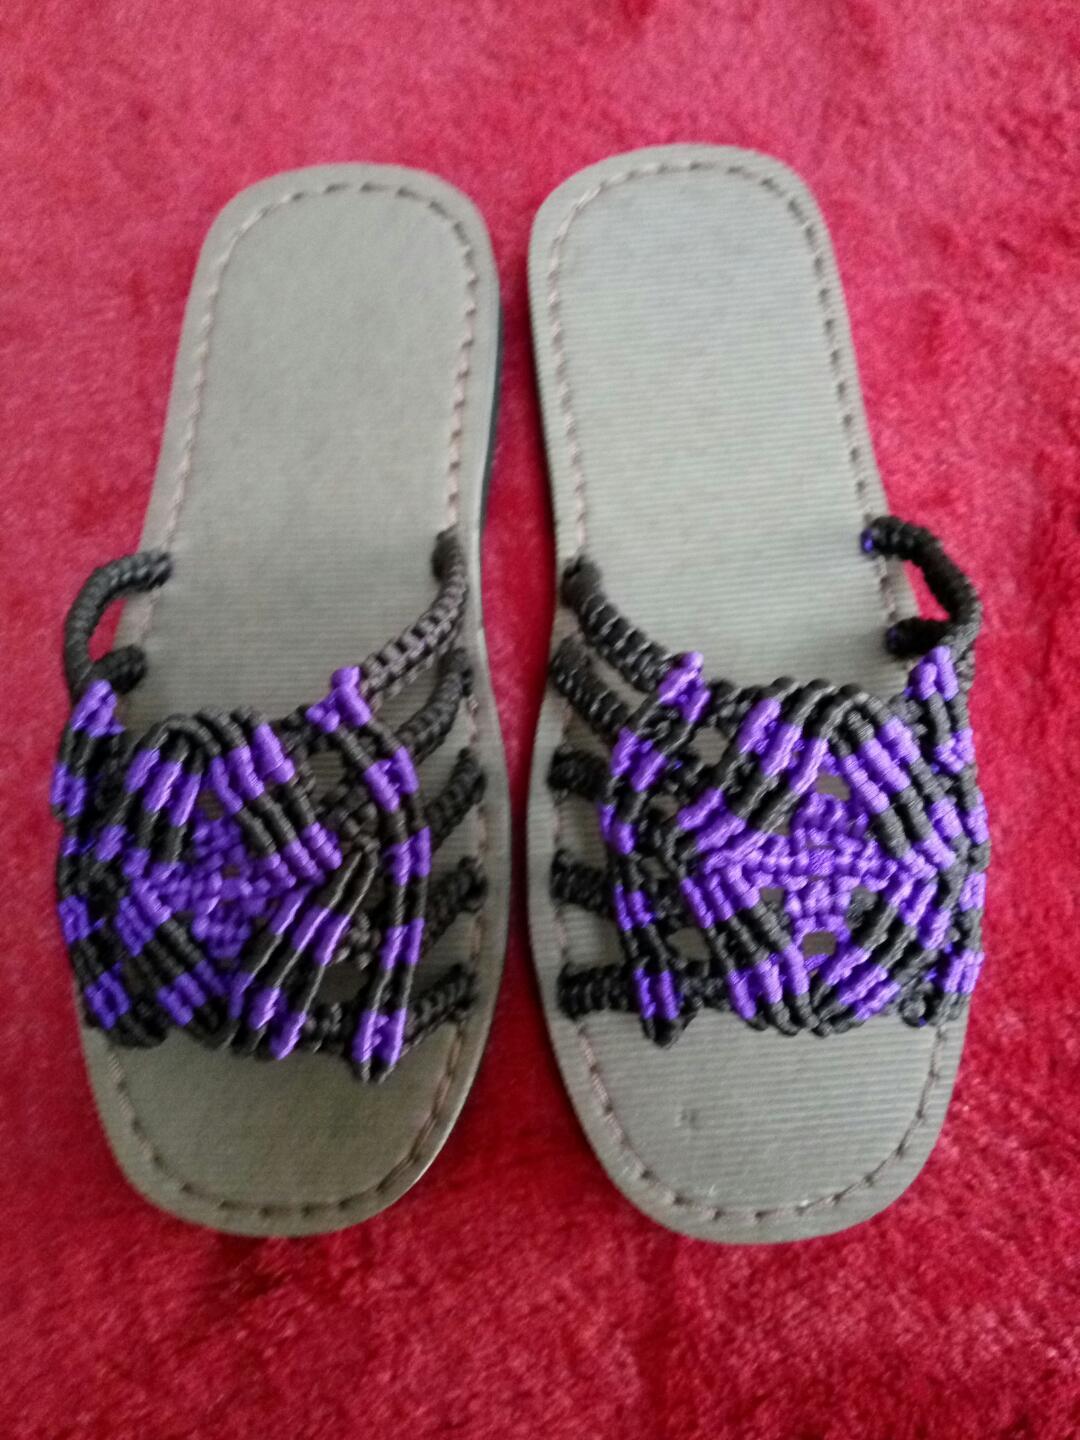 中国结 双色五爪男式拖鞋成品,纯手工制作,可预订(qq1593220356),两双